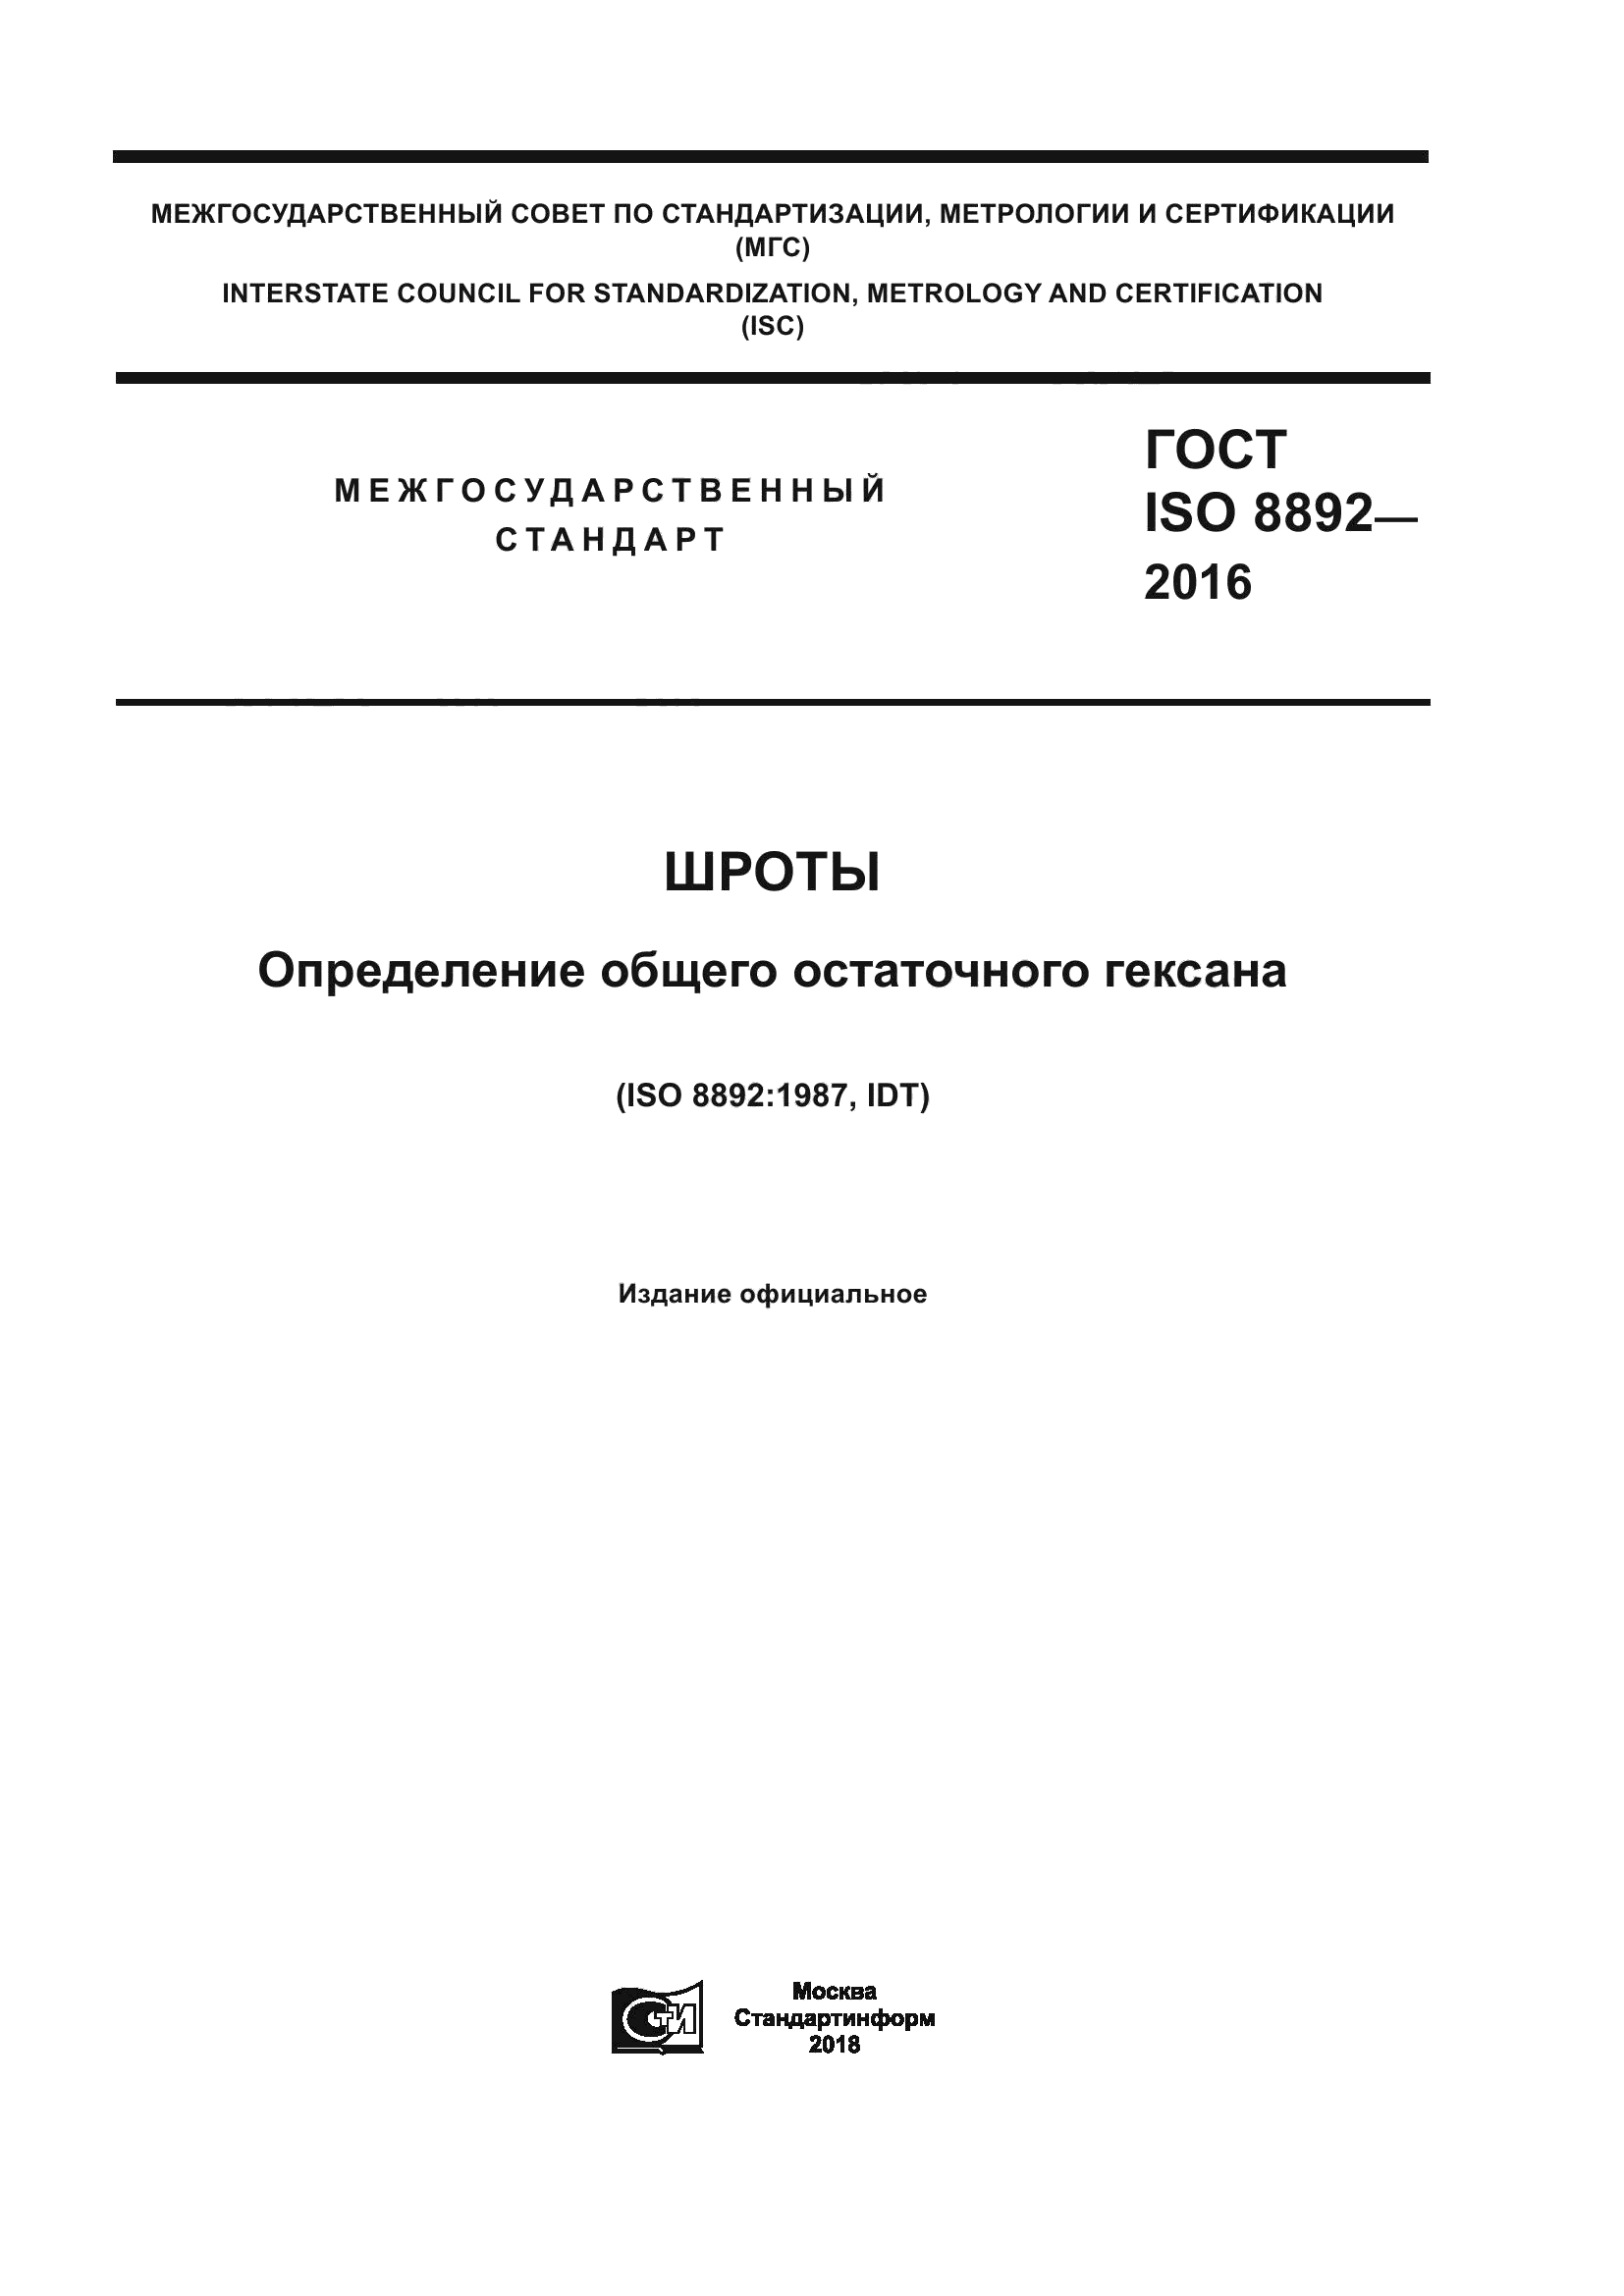 ГОСТ ISO 8892-2016